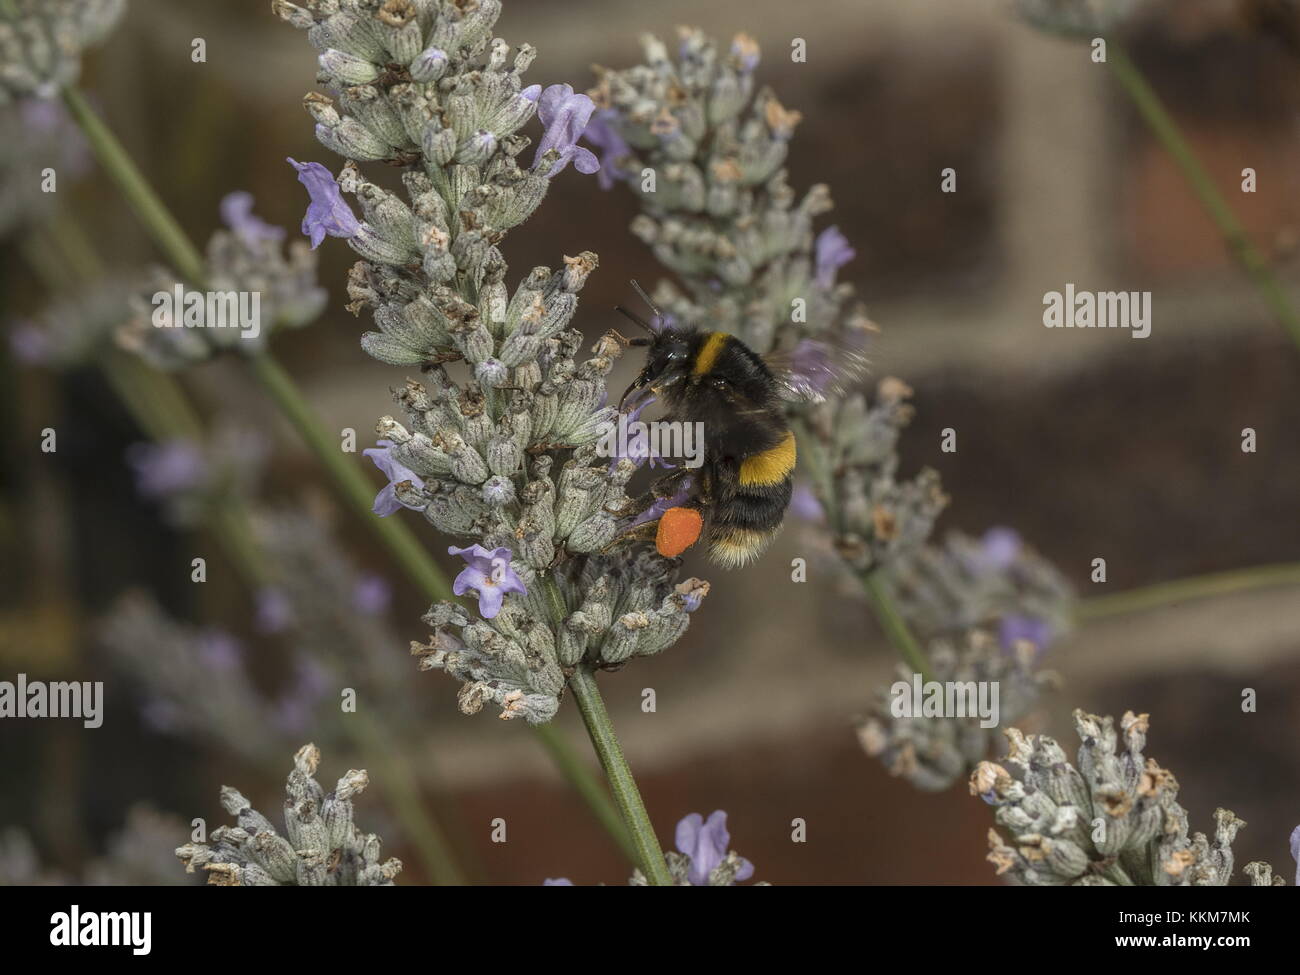 Trabajador buff-tailed abejorros Bombus terrestris, completa, con encantadoras cestas de polen, de lavanda. Foto de stock